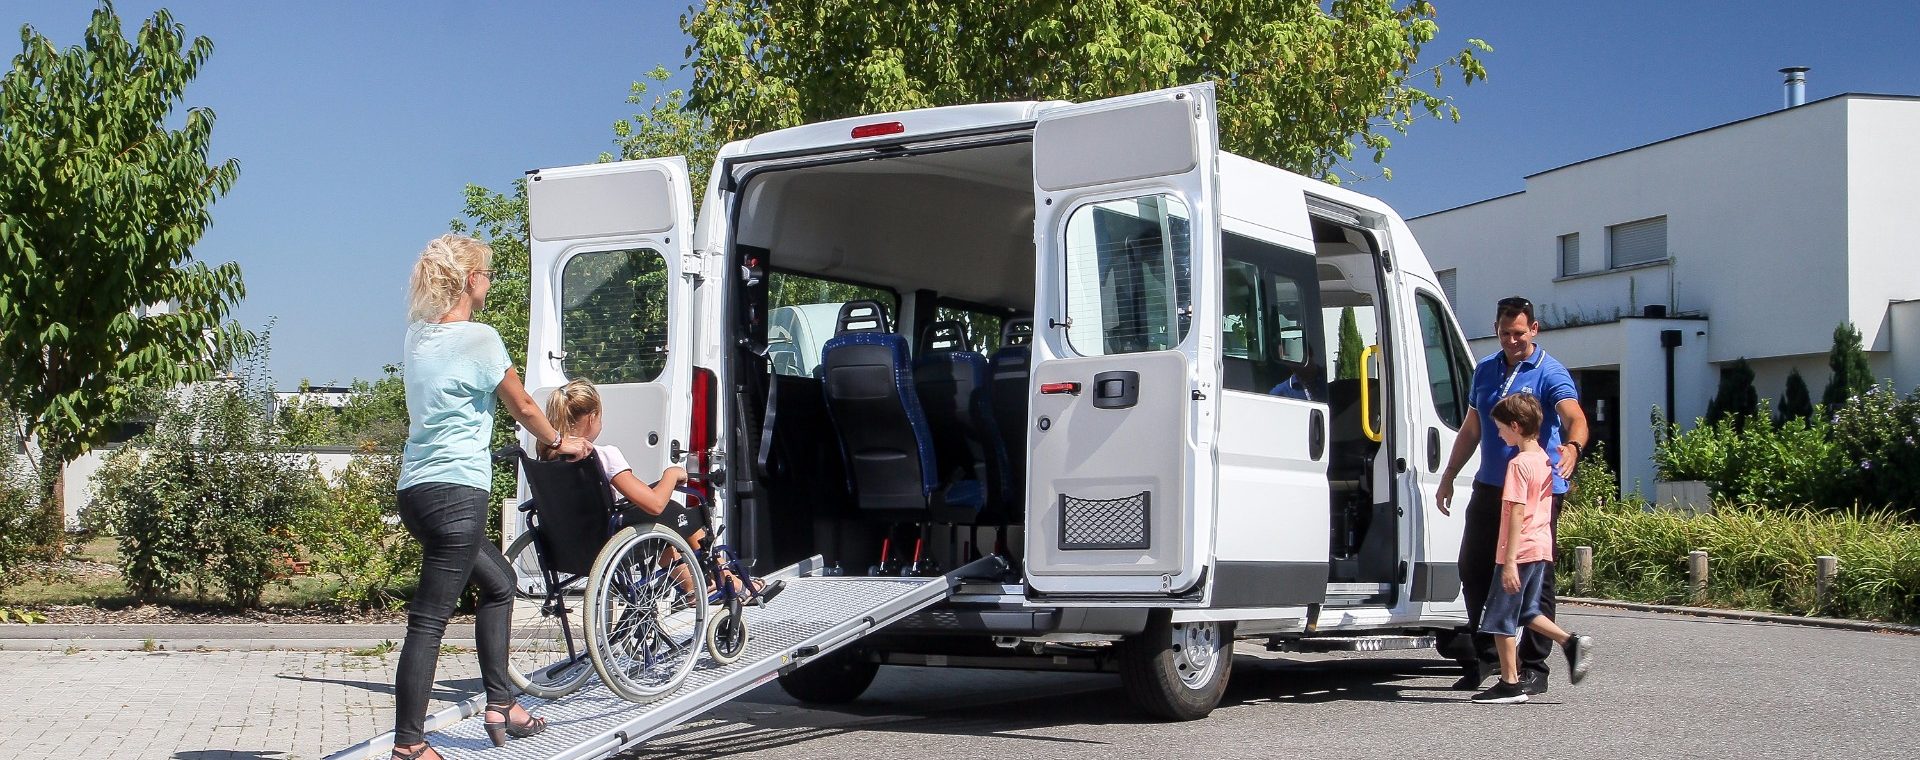 minibus citroen tpmr avec enfant en fauteuil roulant montant sur la rampe